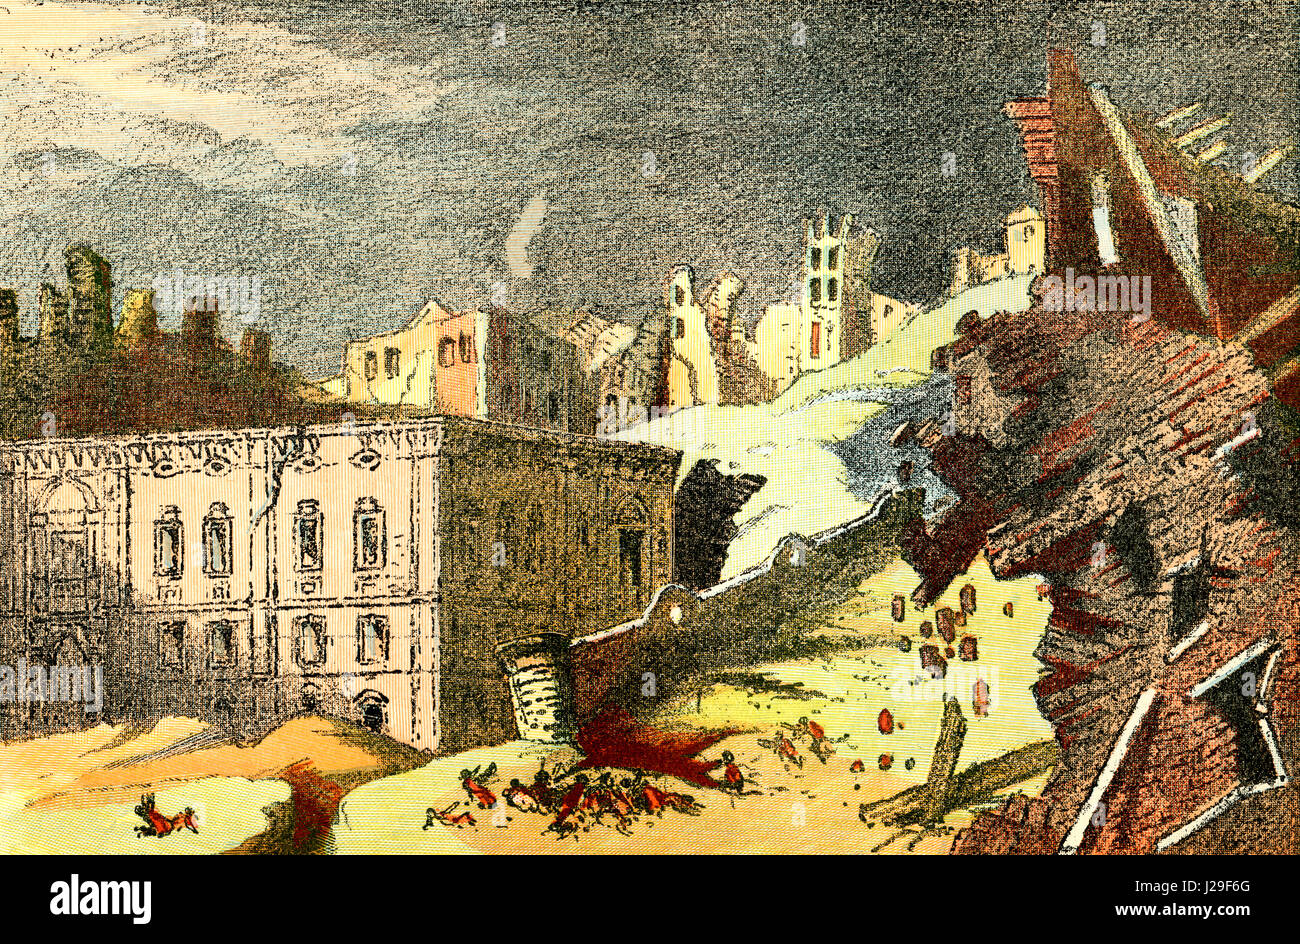 El terremoto de Lisboa, Portugal en 1755, aka gran terremoto de Lisboa, que causó incendios y un posterior tsunami. Desde los cimientos del mundo o la Geología para principiantes, publicado en 1883. Foto de stock